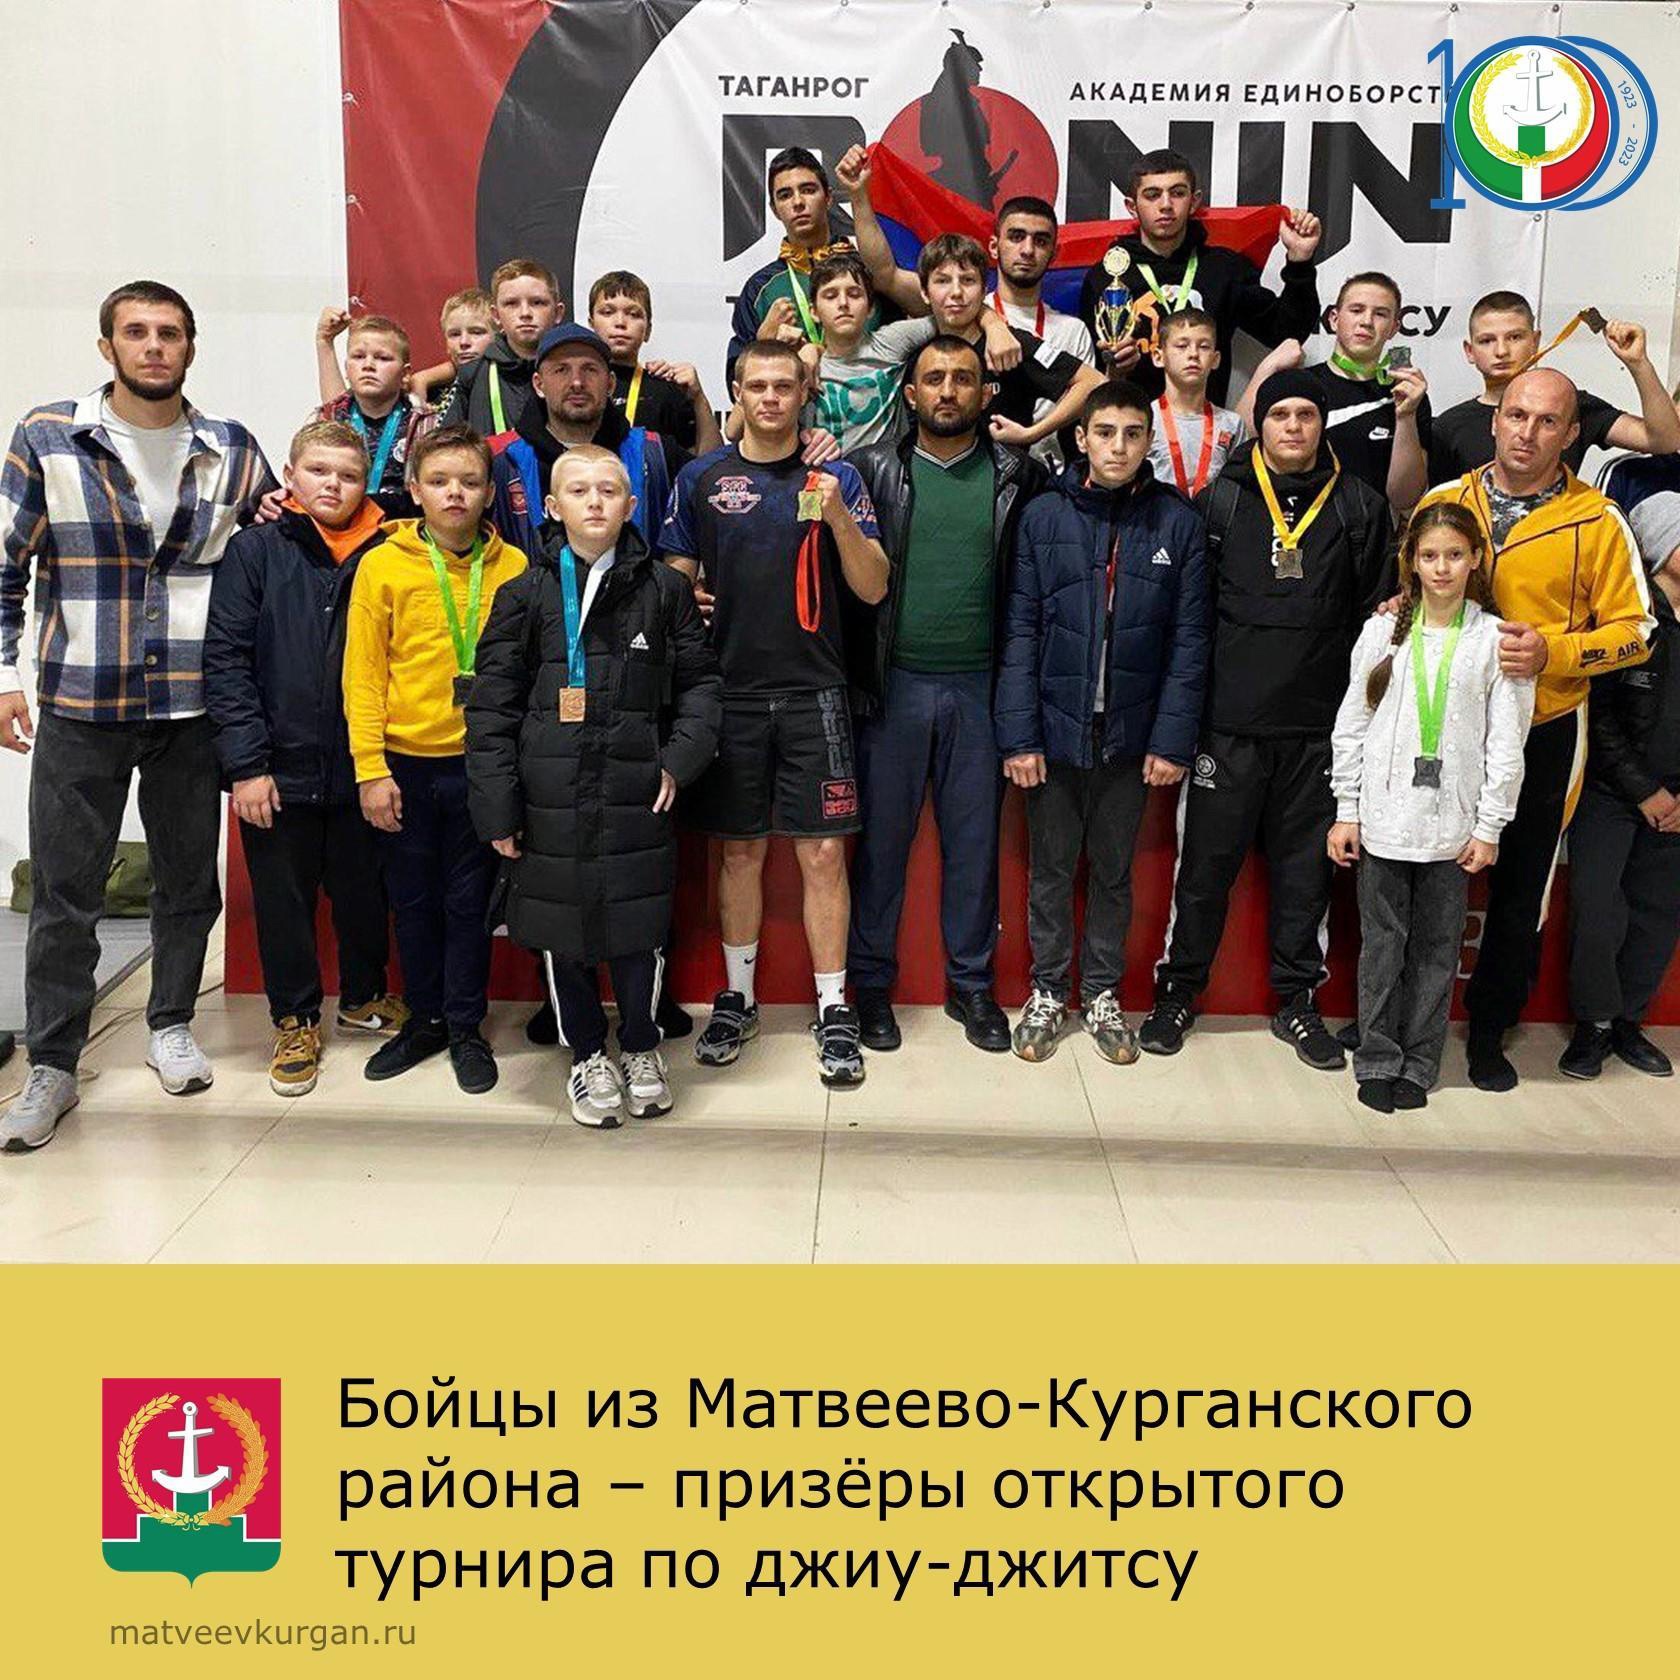 В городе Таганроге состоялся открытый турнир по джиу-джитсу